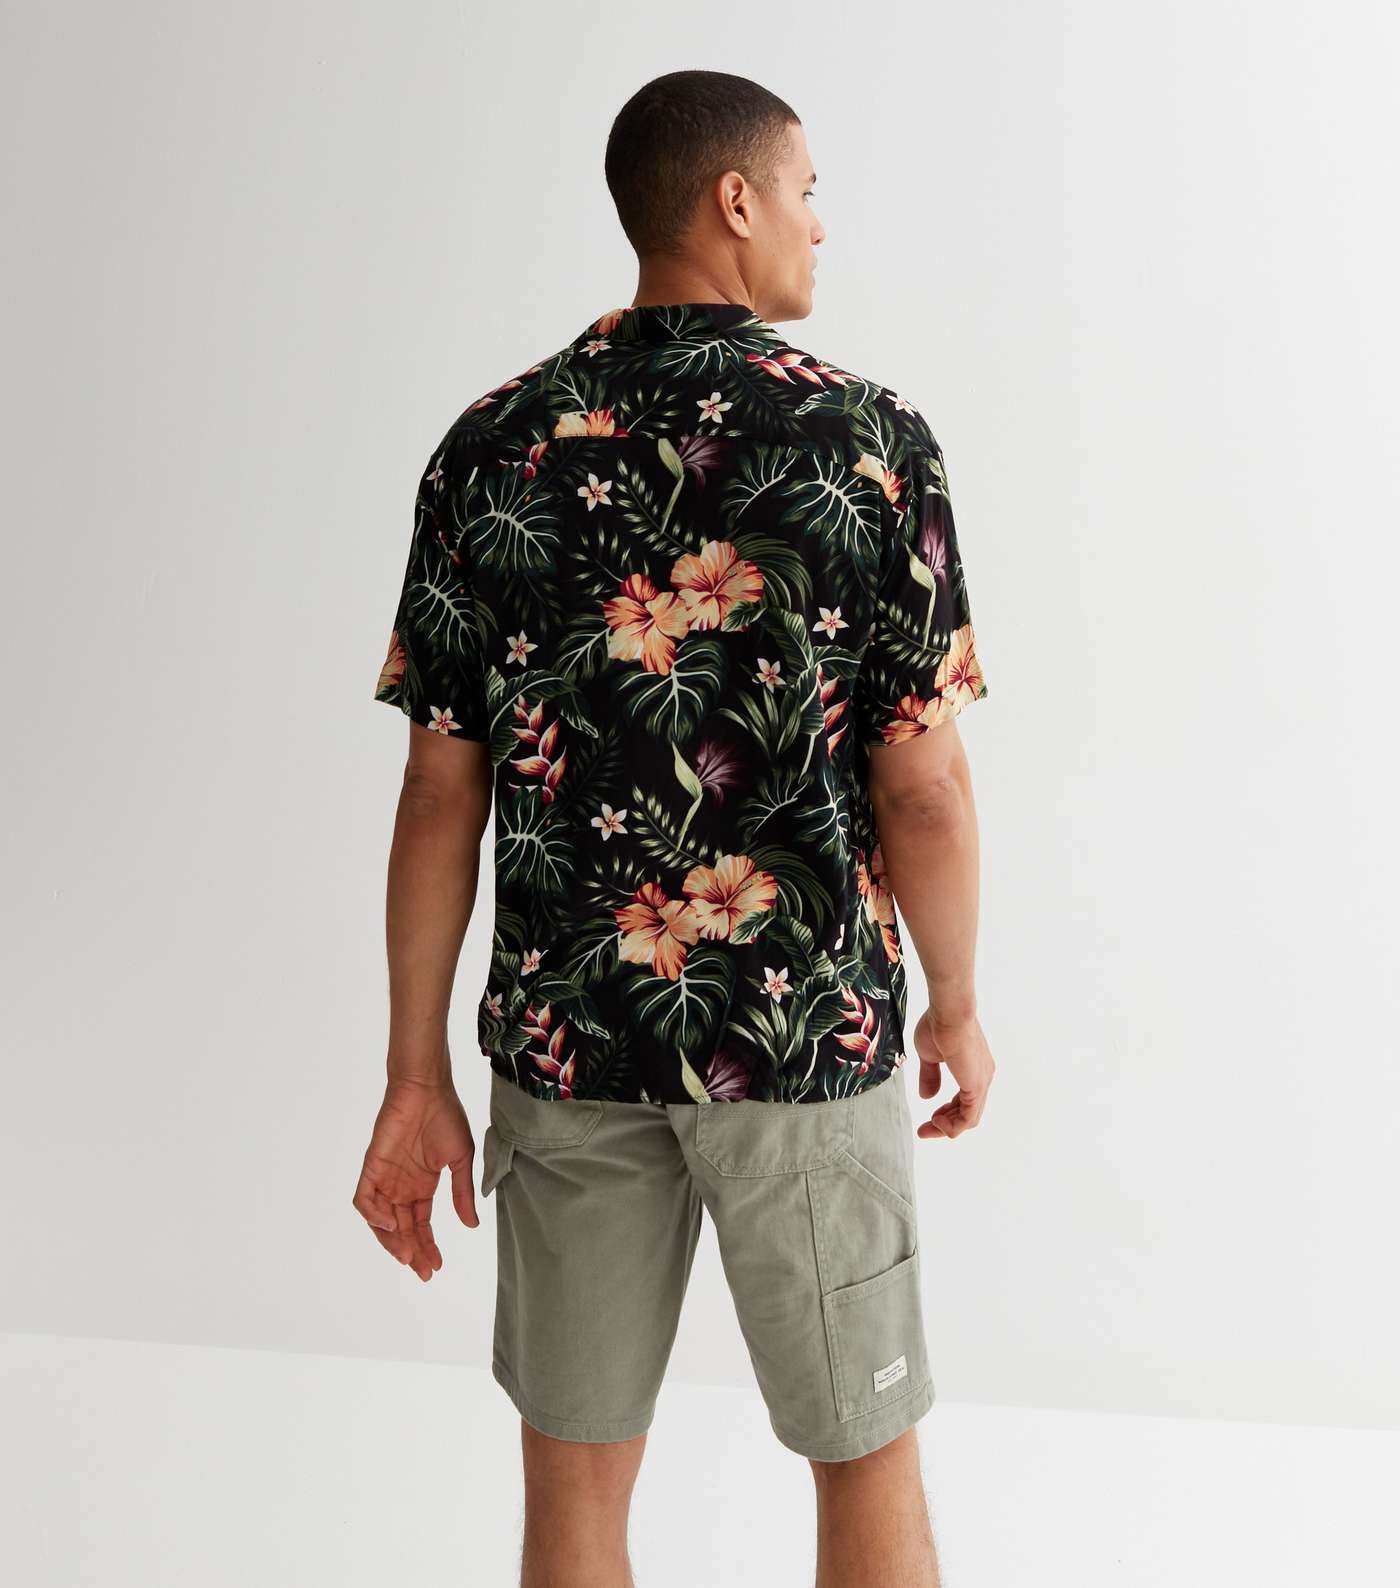 Jack & Jones Black Tropical Floral Short Sleeve Shirt Image 4